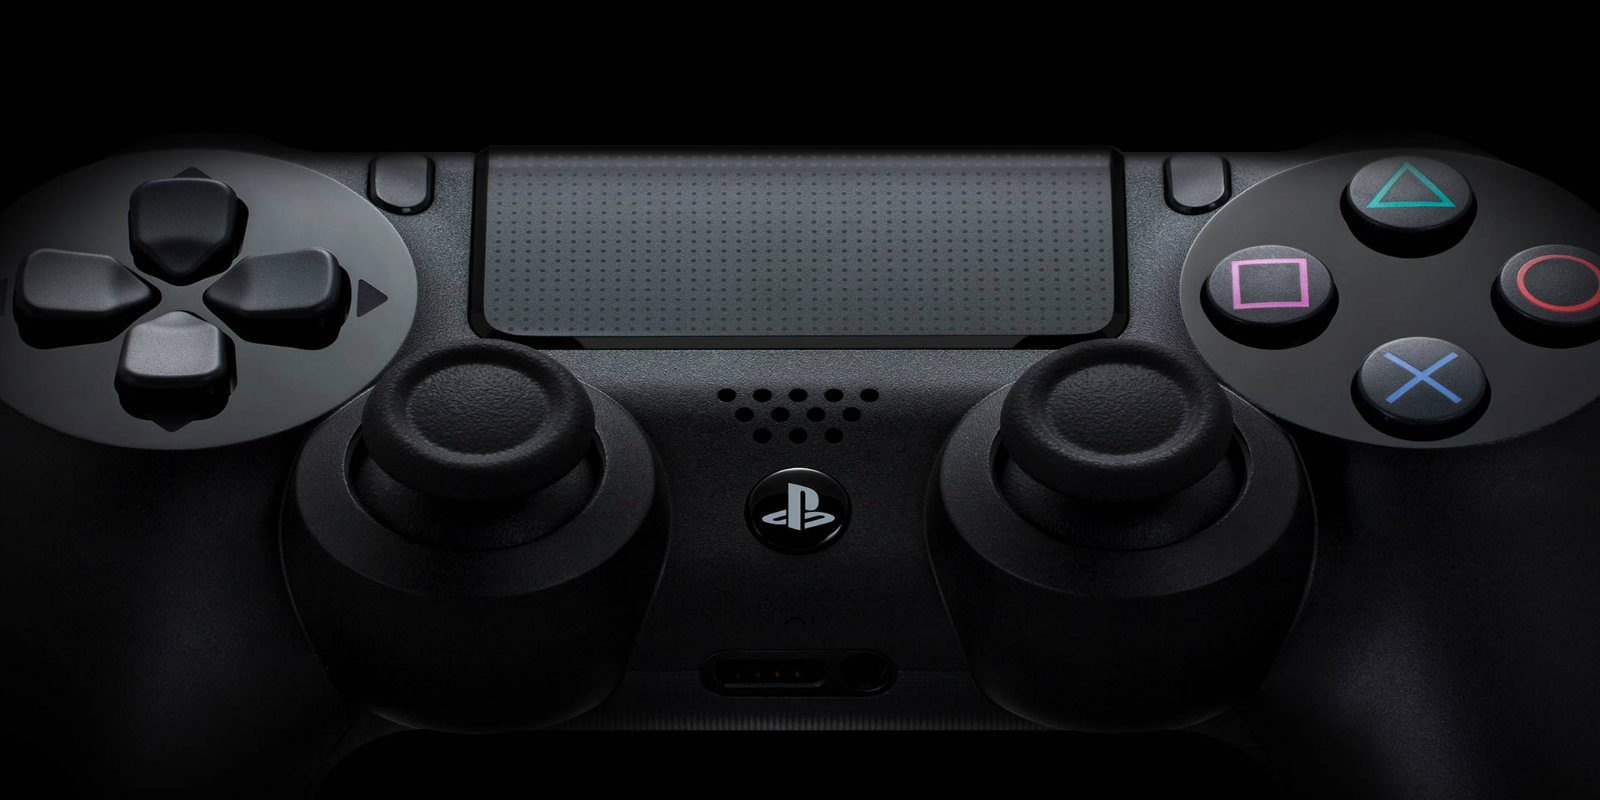 Llega una nueva actualización de software a PlayStation 4